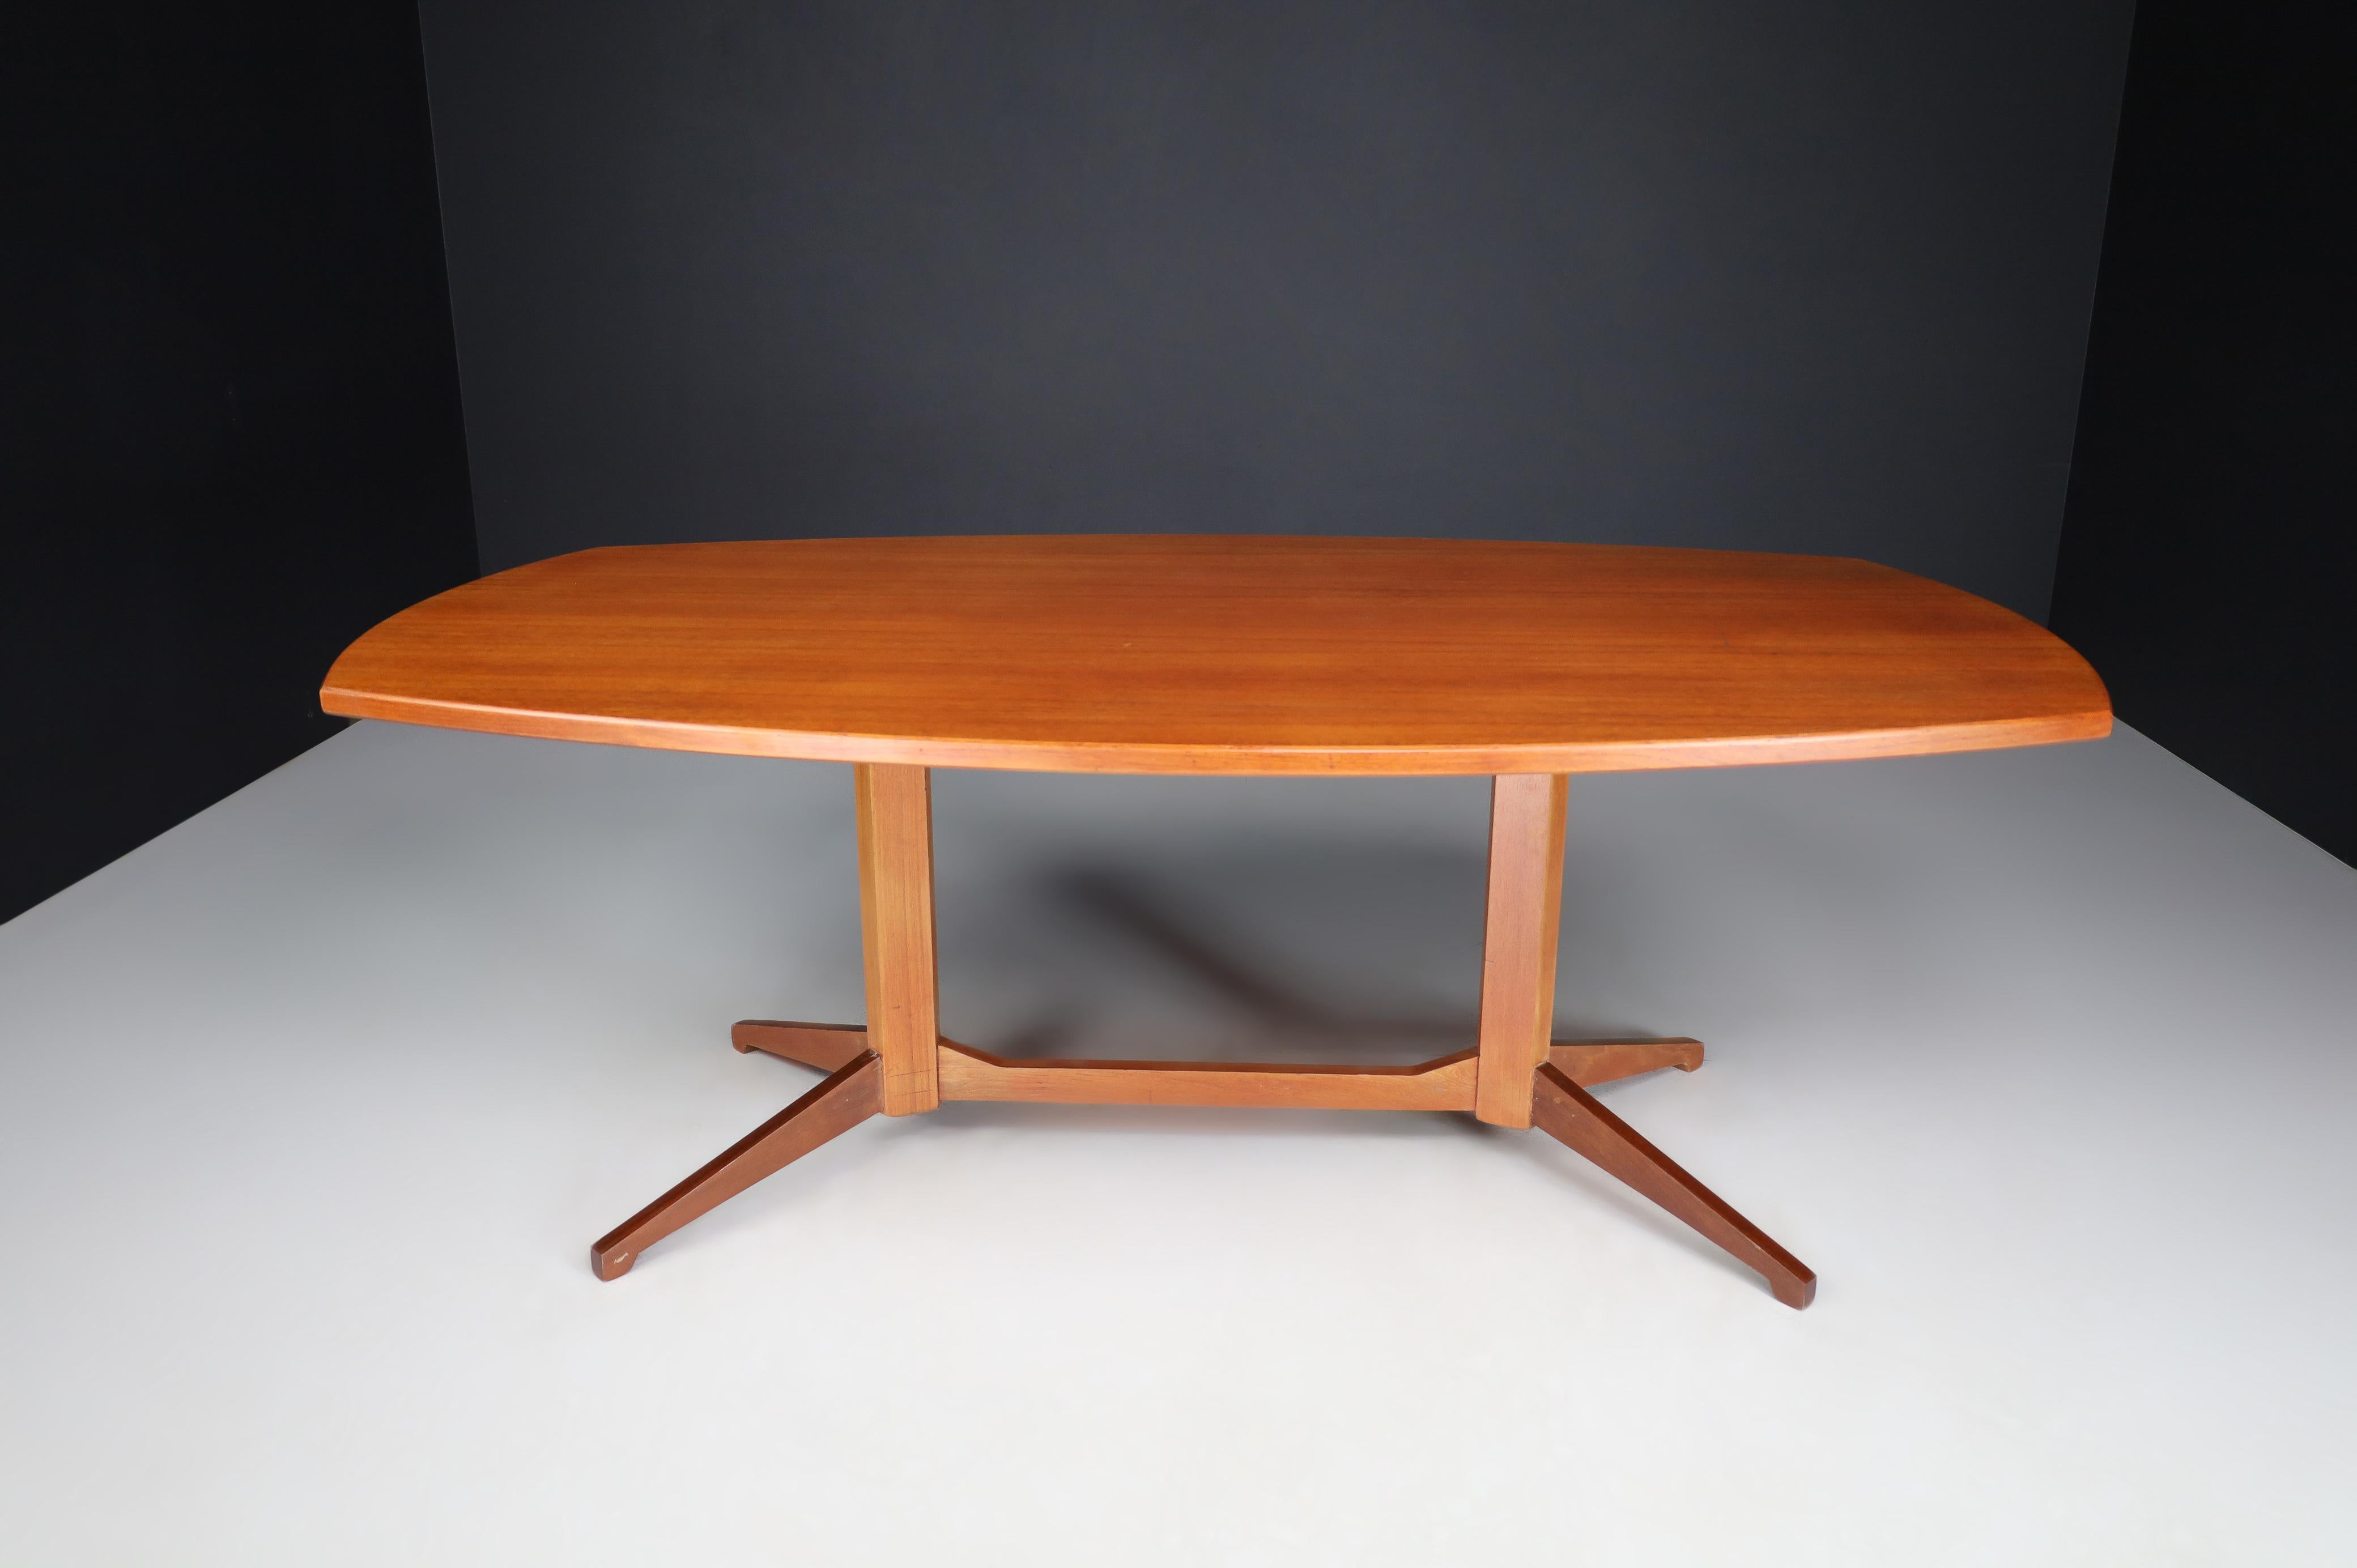 Table ou bureau Franco Albini pour Poggi, Italie 1960s

Table en noyer modèle TL22 de Franco Albini pour Poggi Italie années 1960. Il est en excellent état, avec une petite patine sur les parties en bois. Cette table ou ce bureau unique serait un